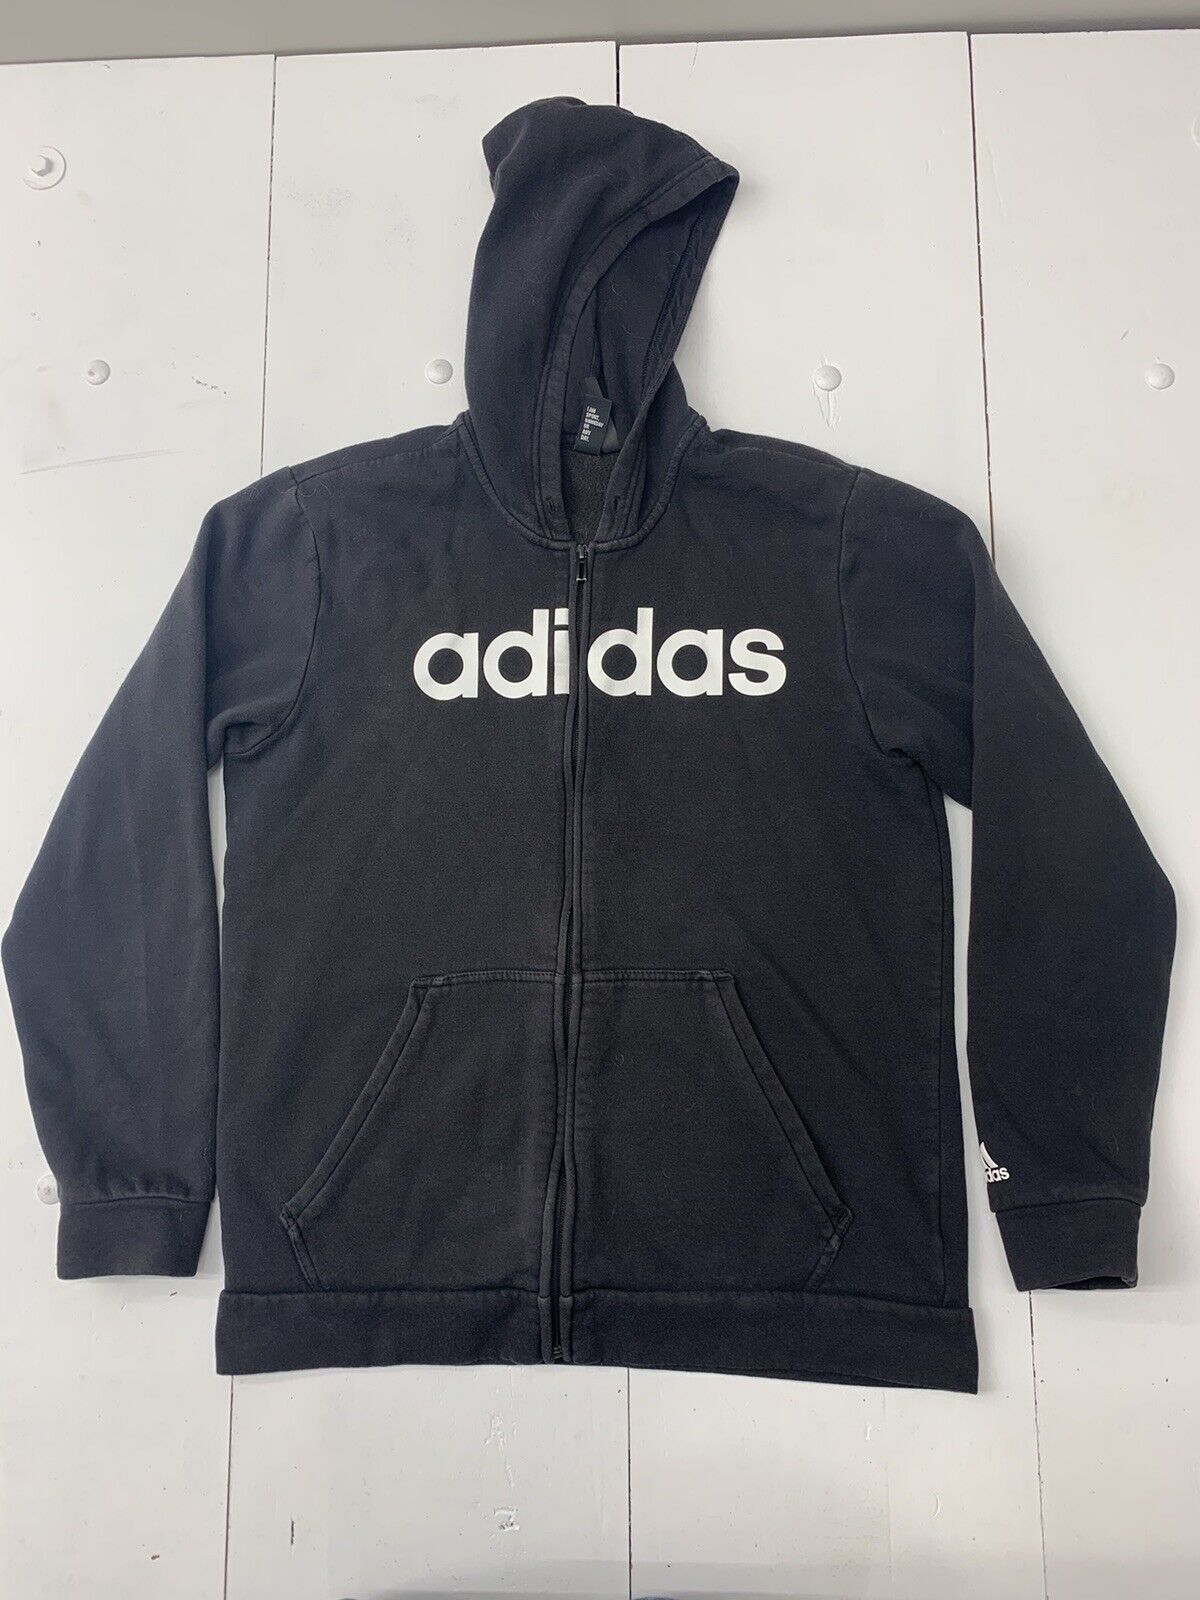 Black exchange Adidas - beyond Size Mens Full zip Large Jacket